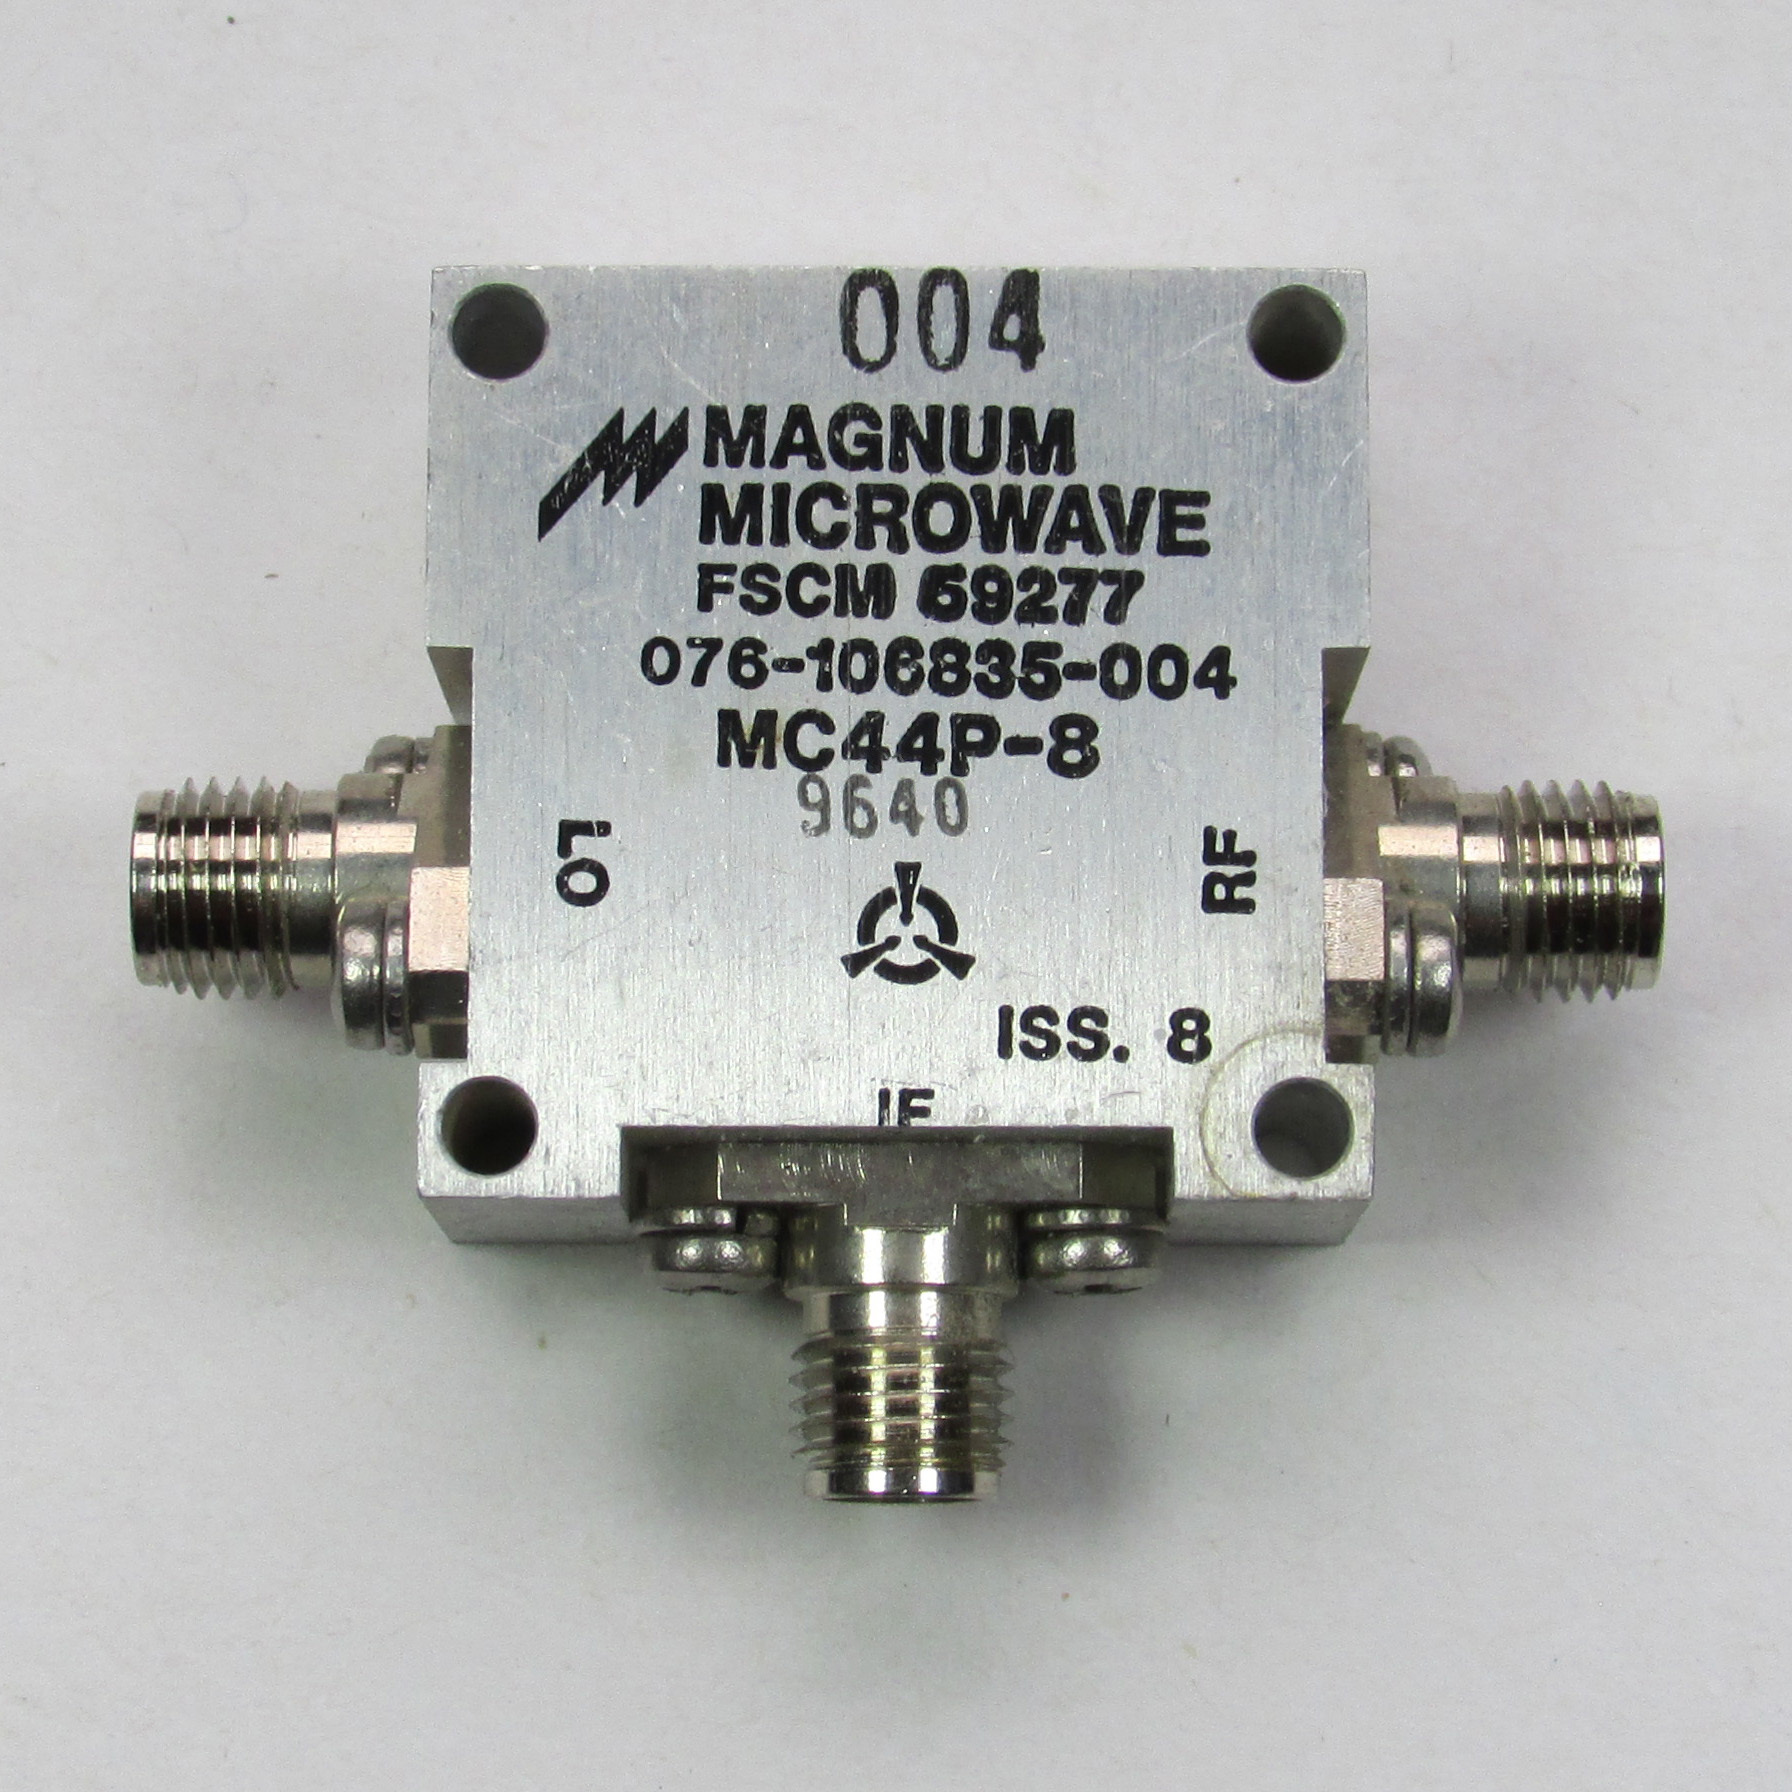 MAGNUM MC44P-8 4-12GHz SMA RF Coaxial Double Balanced Mixer